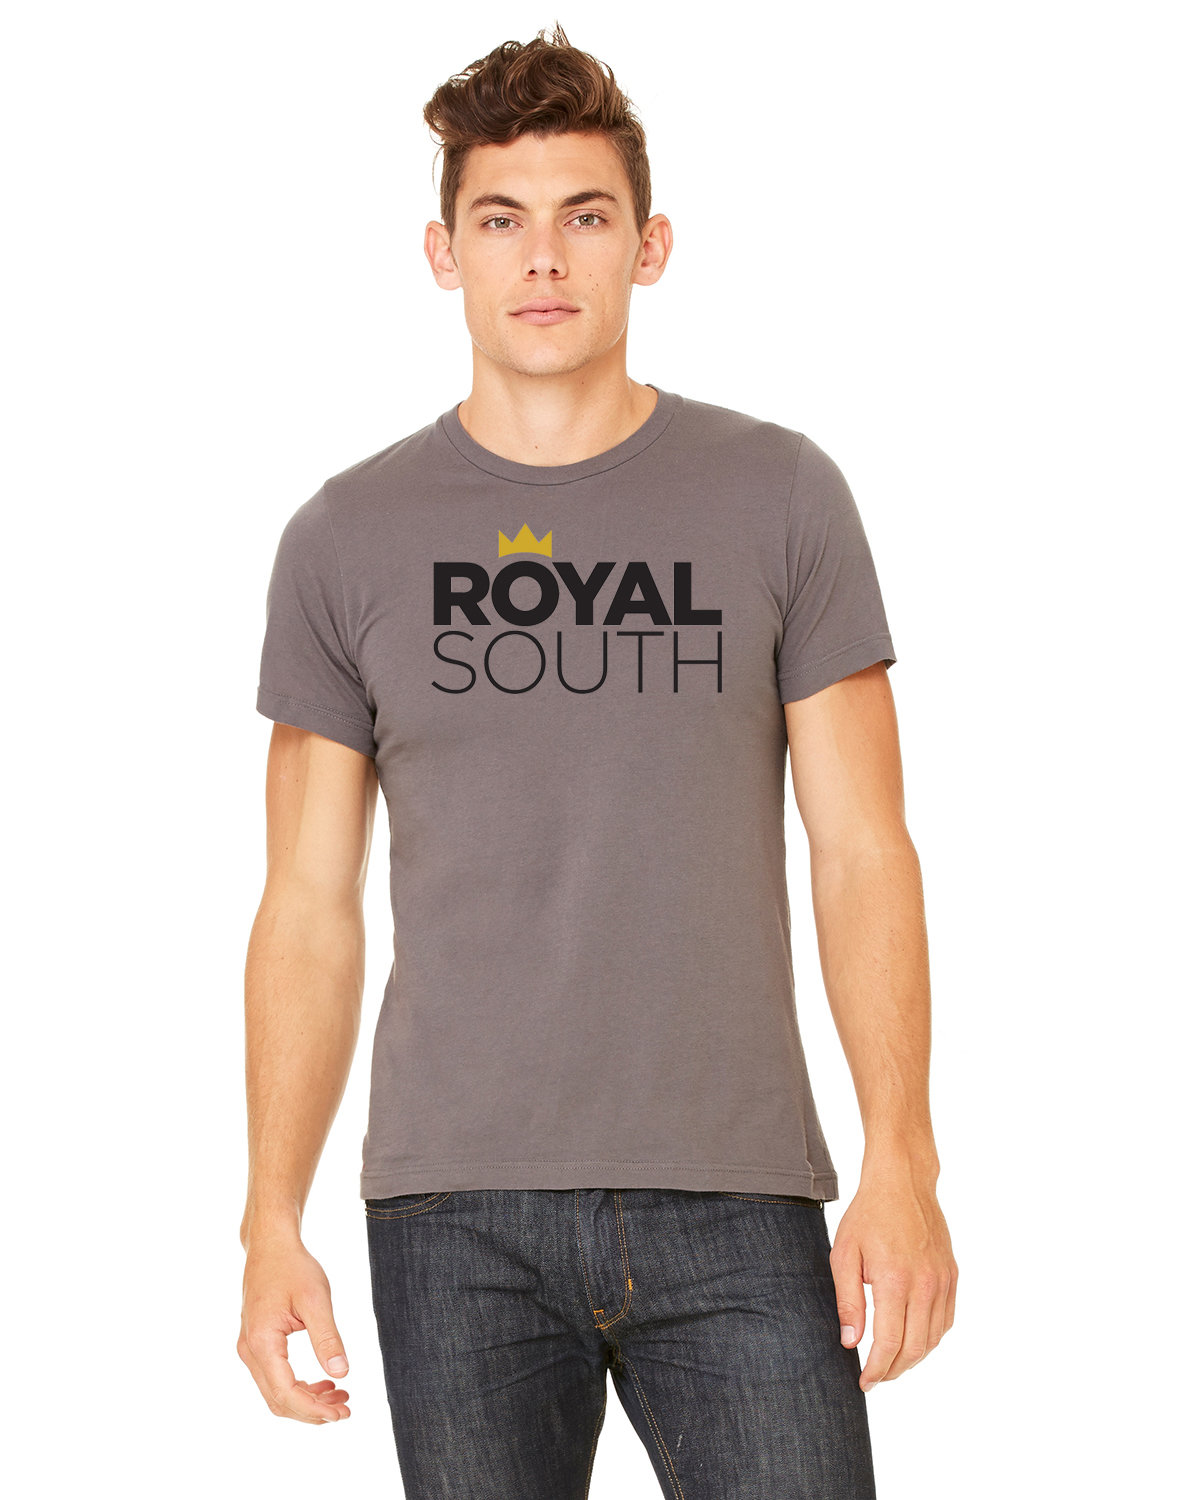 Royal South Logo Tee